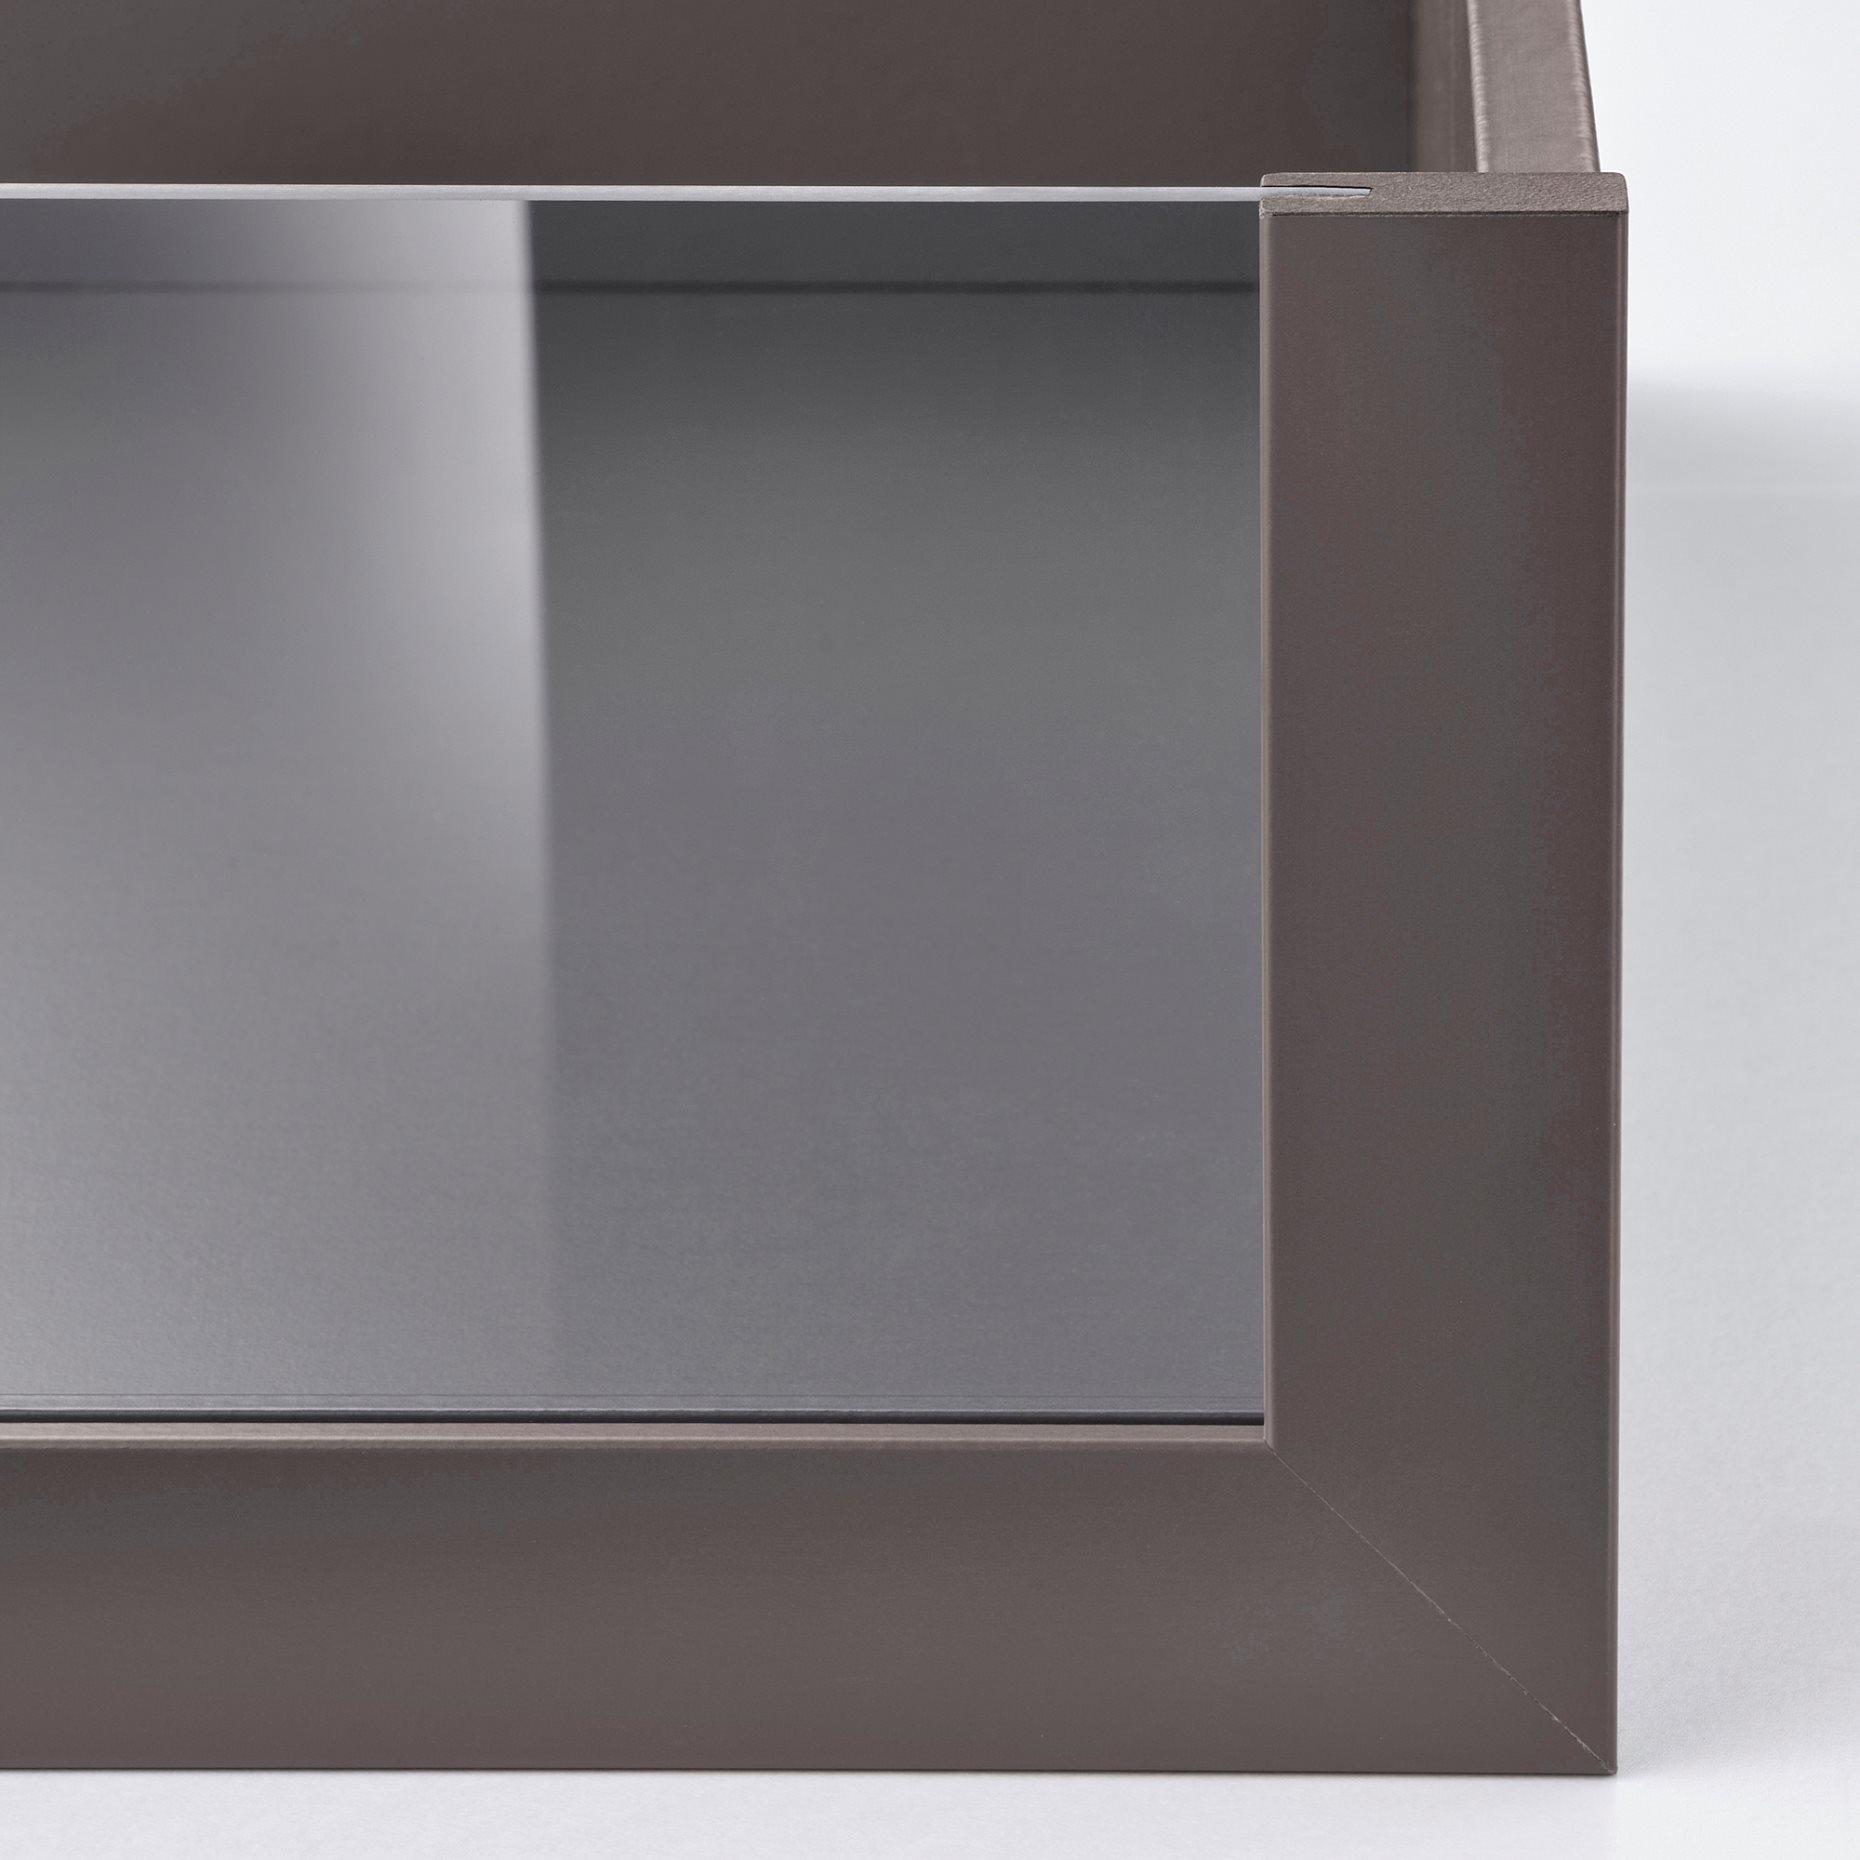 KOMPLEMENT, συρτάρι με γυάλινη πρόσοψη, 100x58 cm, 805.092.02